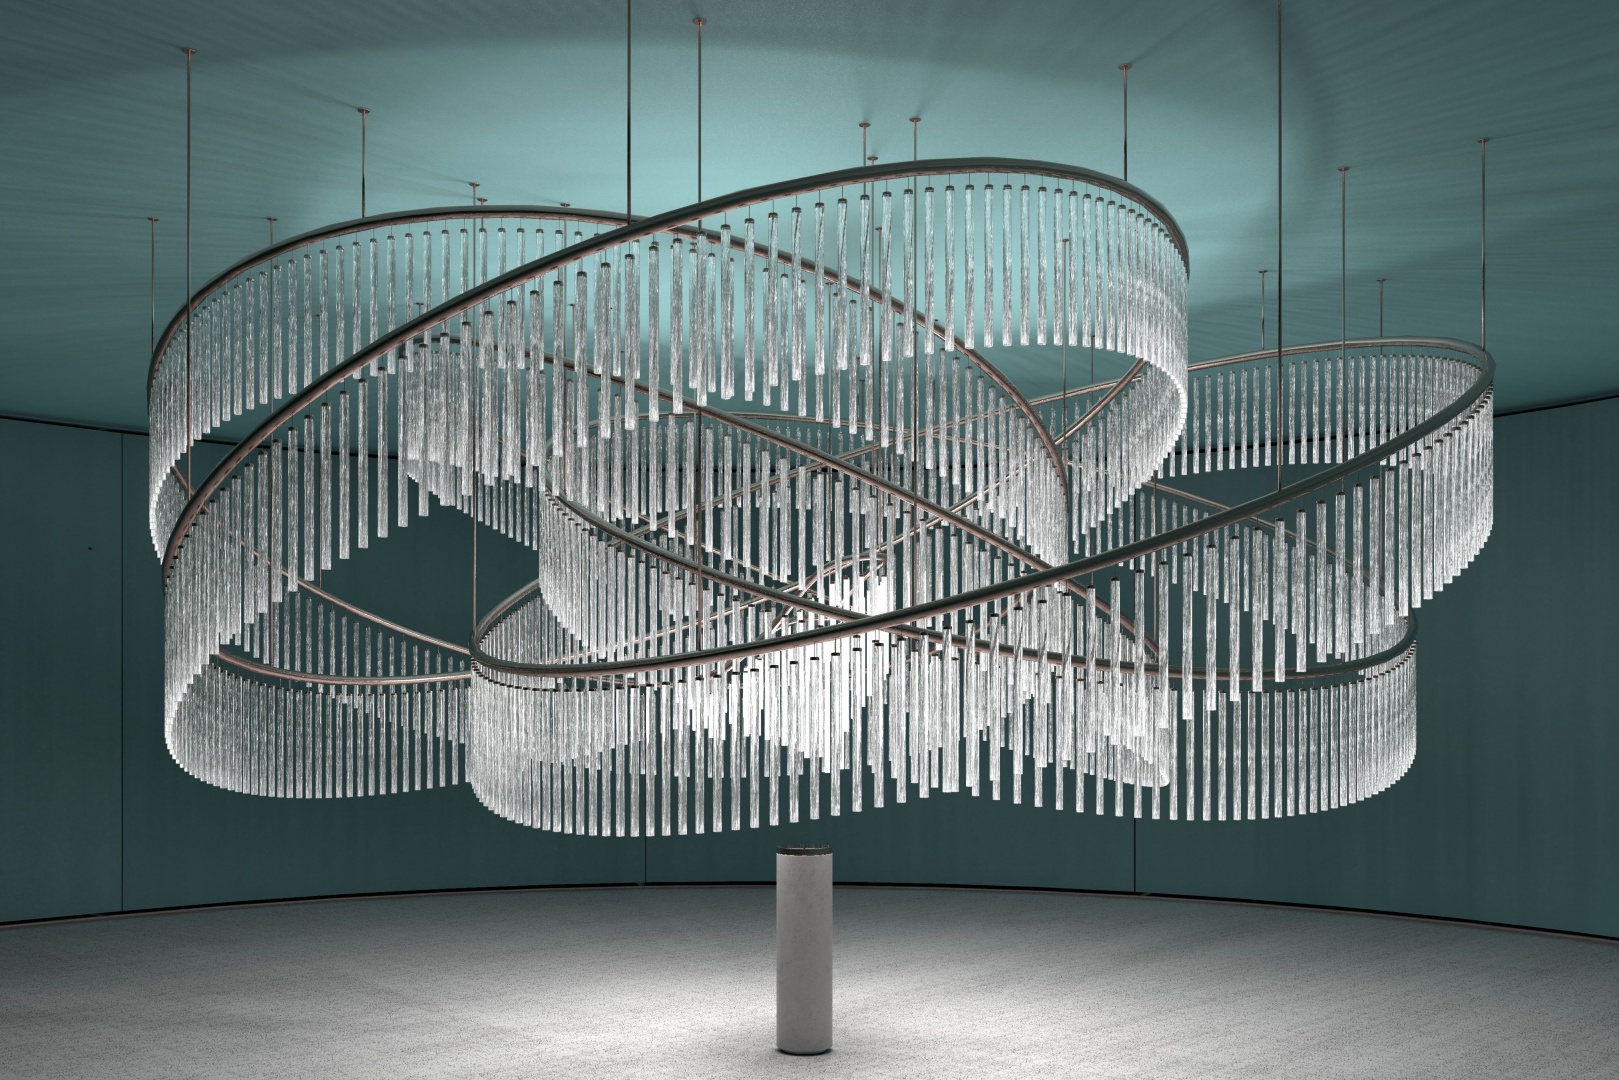 Preciosa представит интерактивную инсталляцию на Миланской неделе дизайна